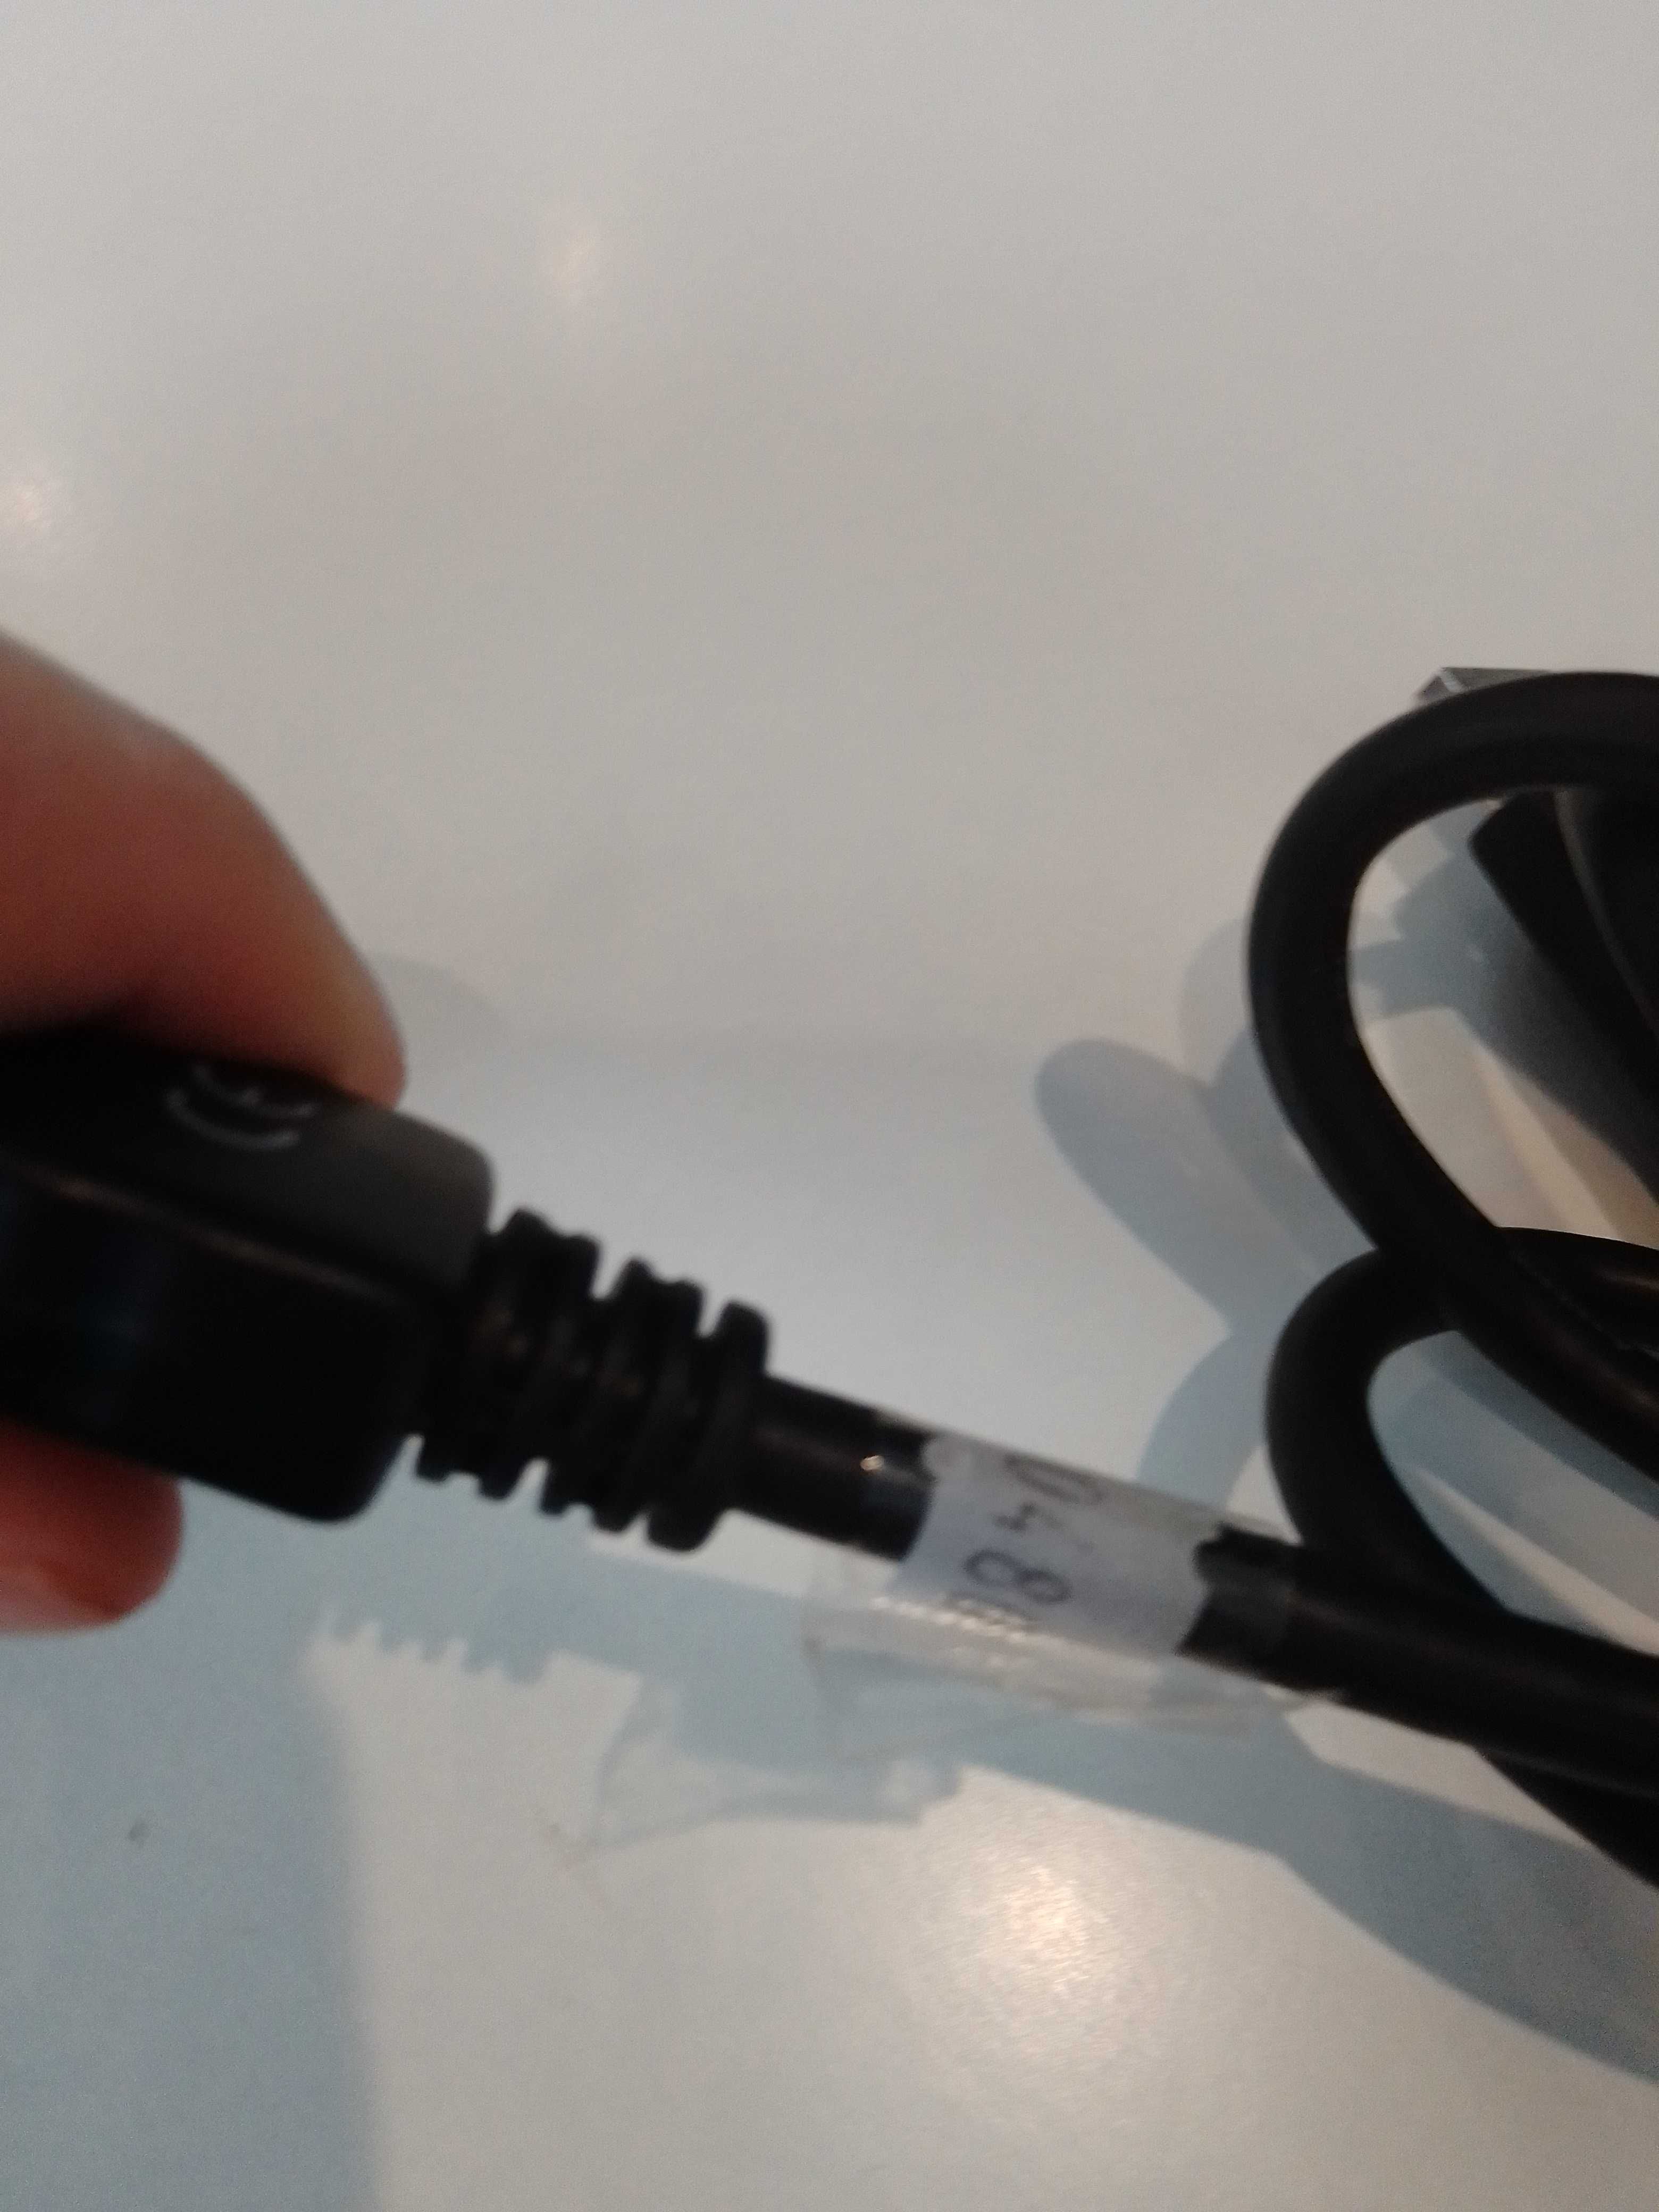 Kabel przewód USB / mini USB (001346)